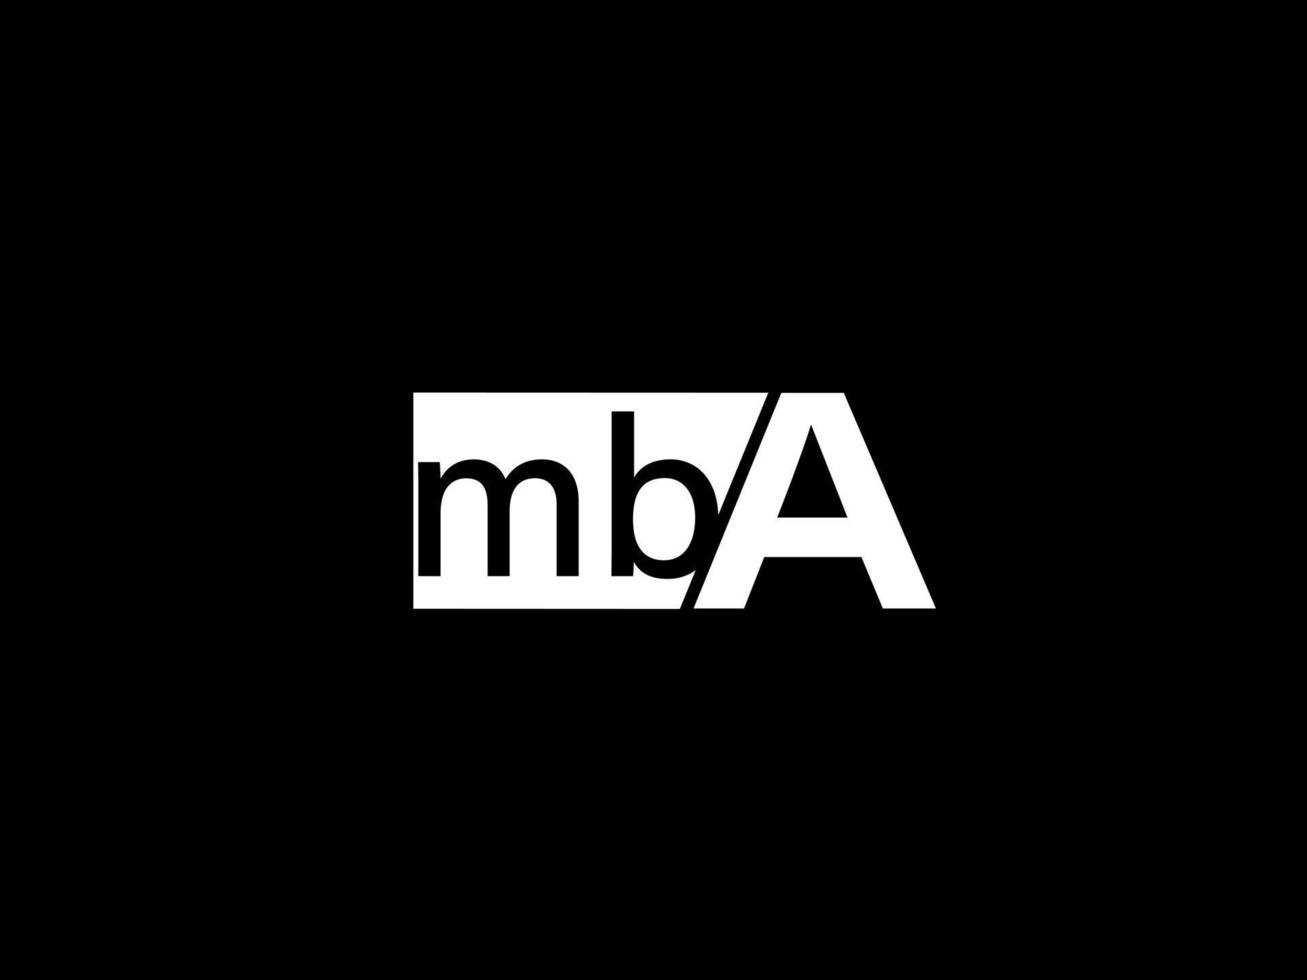 logo mba et art vectoriel de conception graphique, icônes isolées sur fond noir